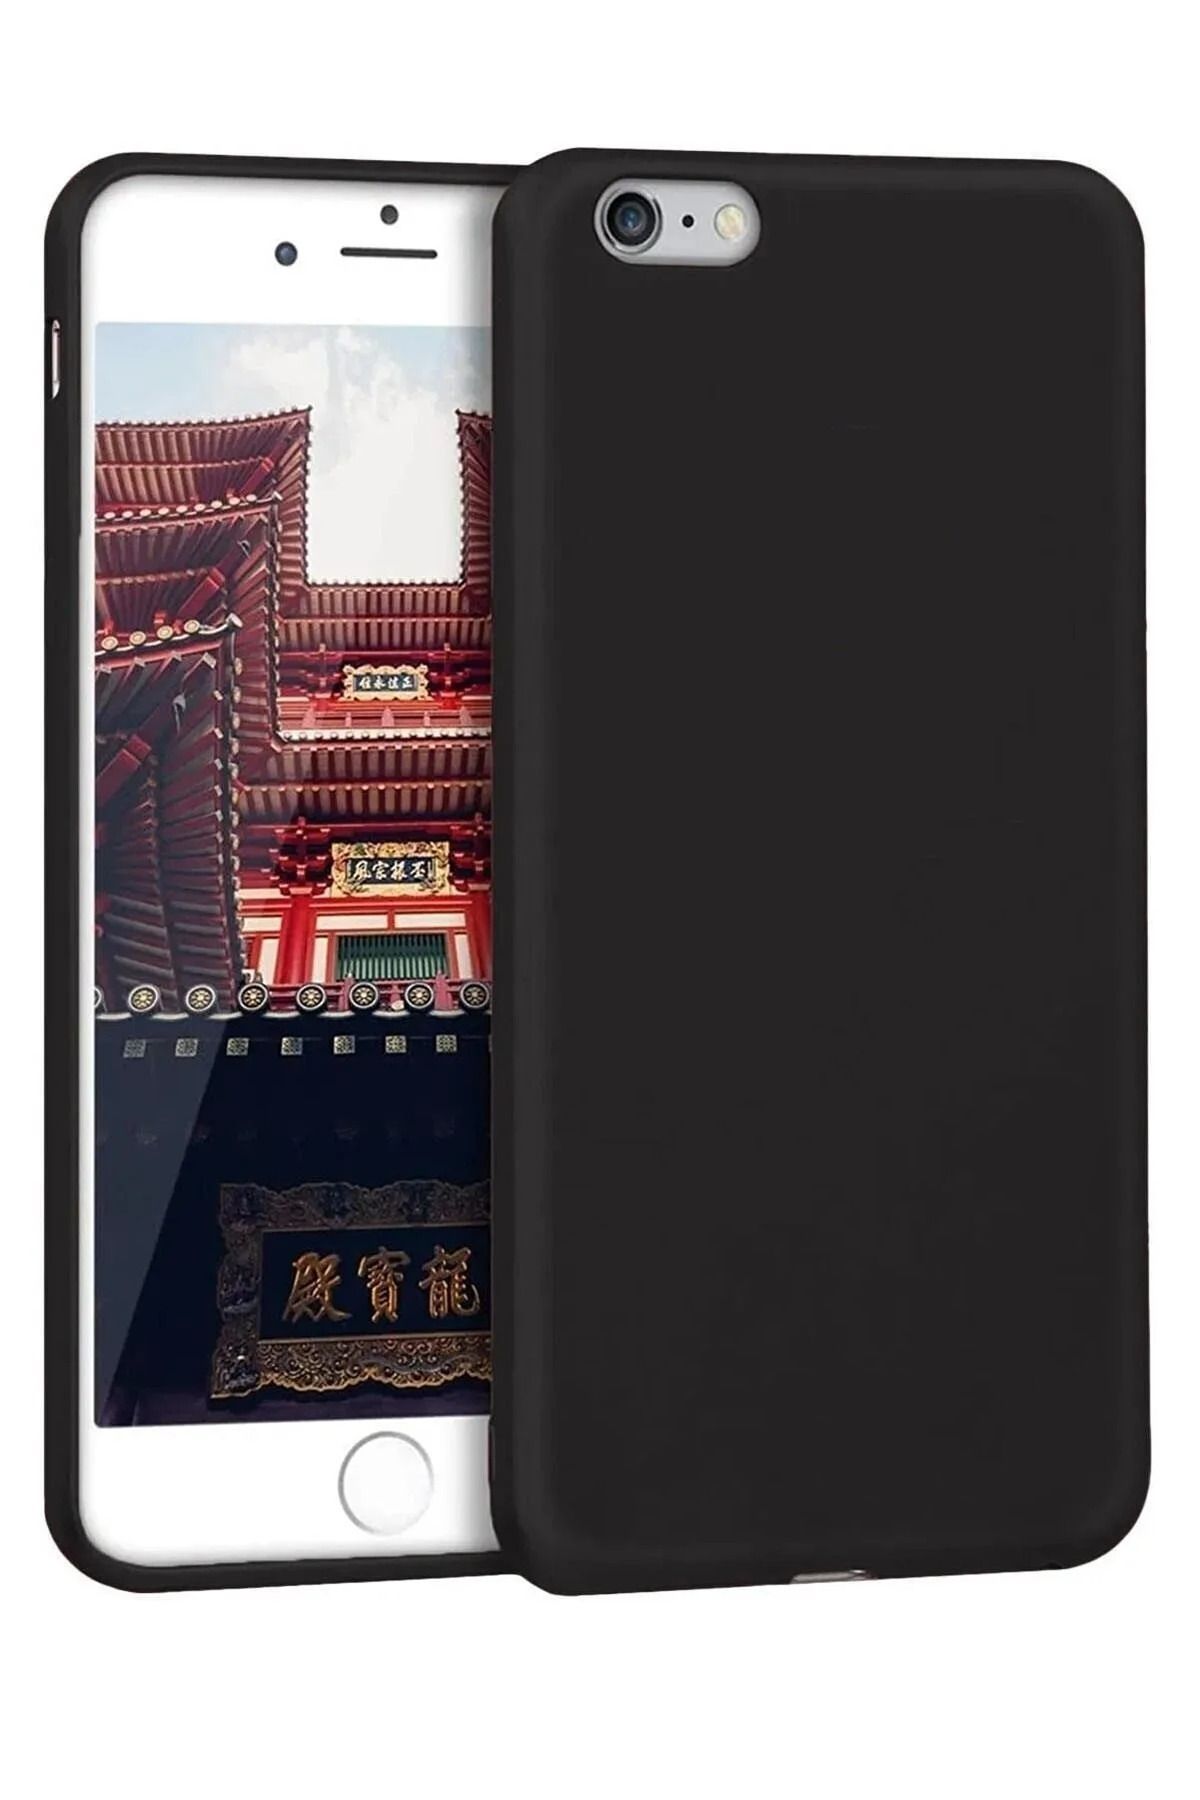 Fibaks Apple Iphone 5 Kılıf Yumuşak Dokulu Kamera Korumalı Ince Mat Renkli Premium Silikon Kapak